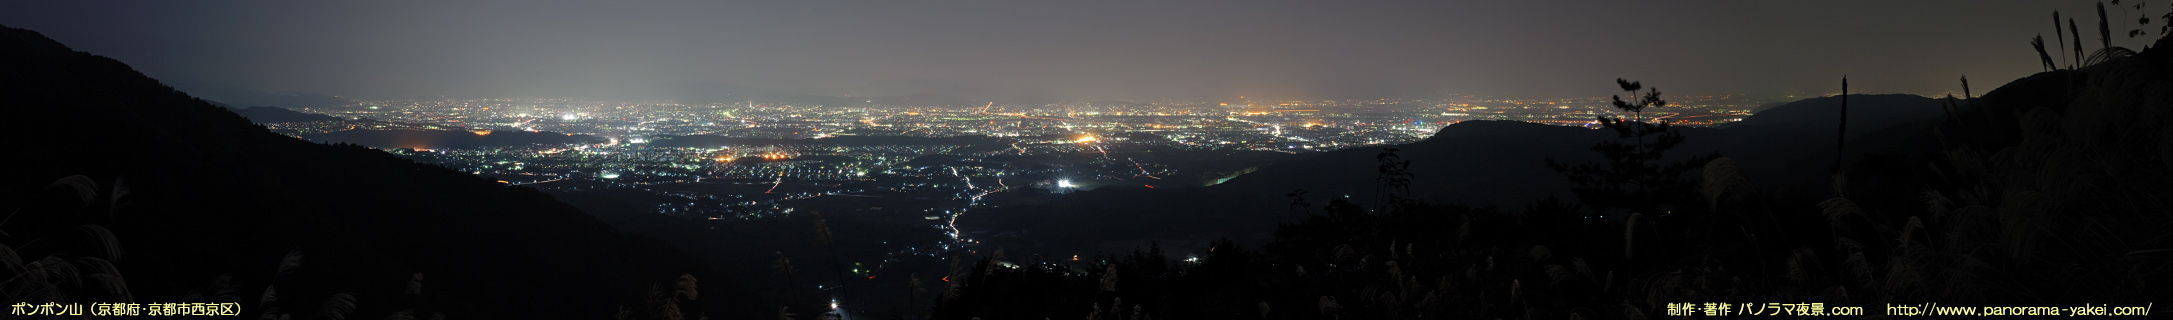 ポンポン山（金蔵寺近く）からのパノラマ夜景写真 ～京都の夜景～